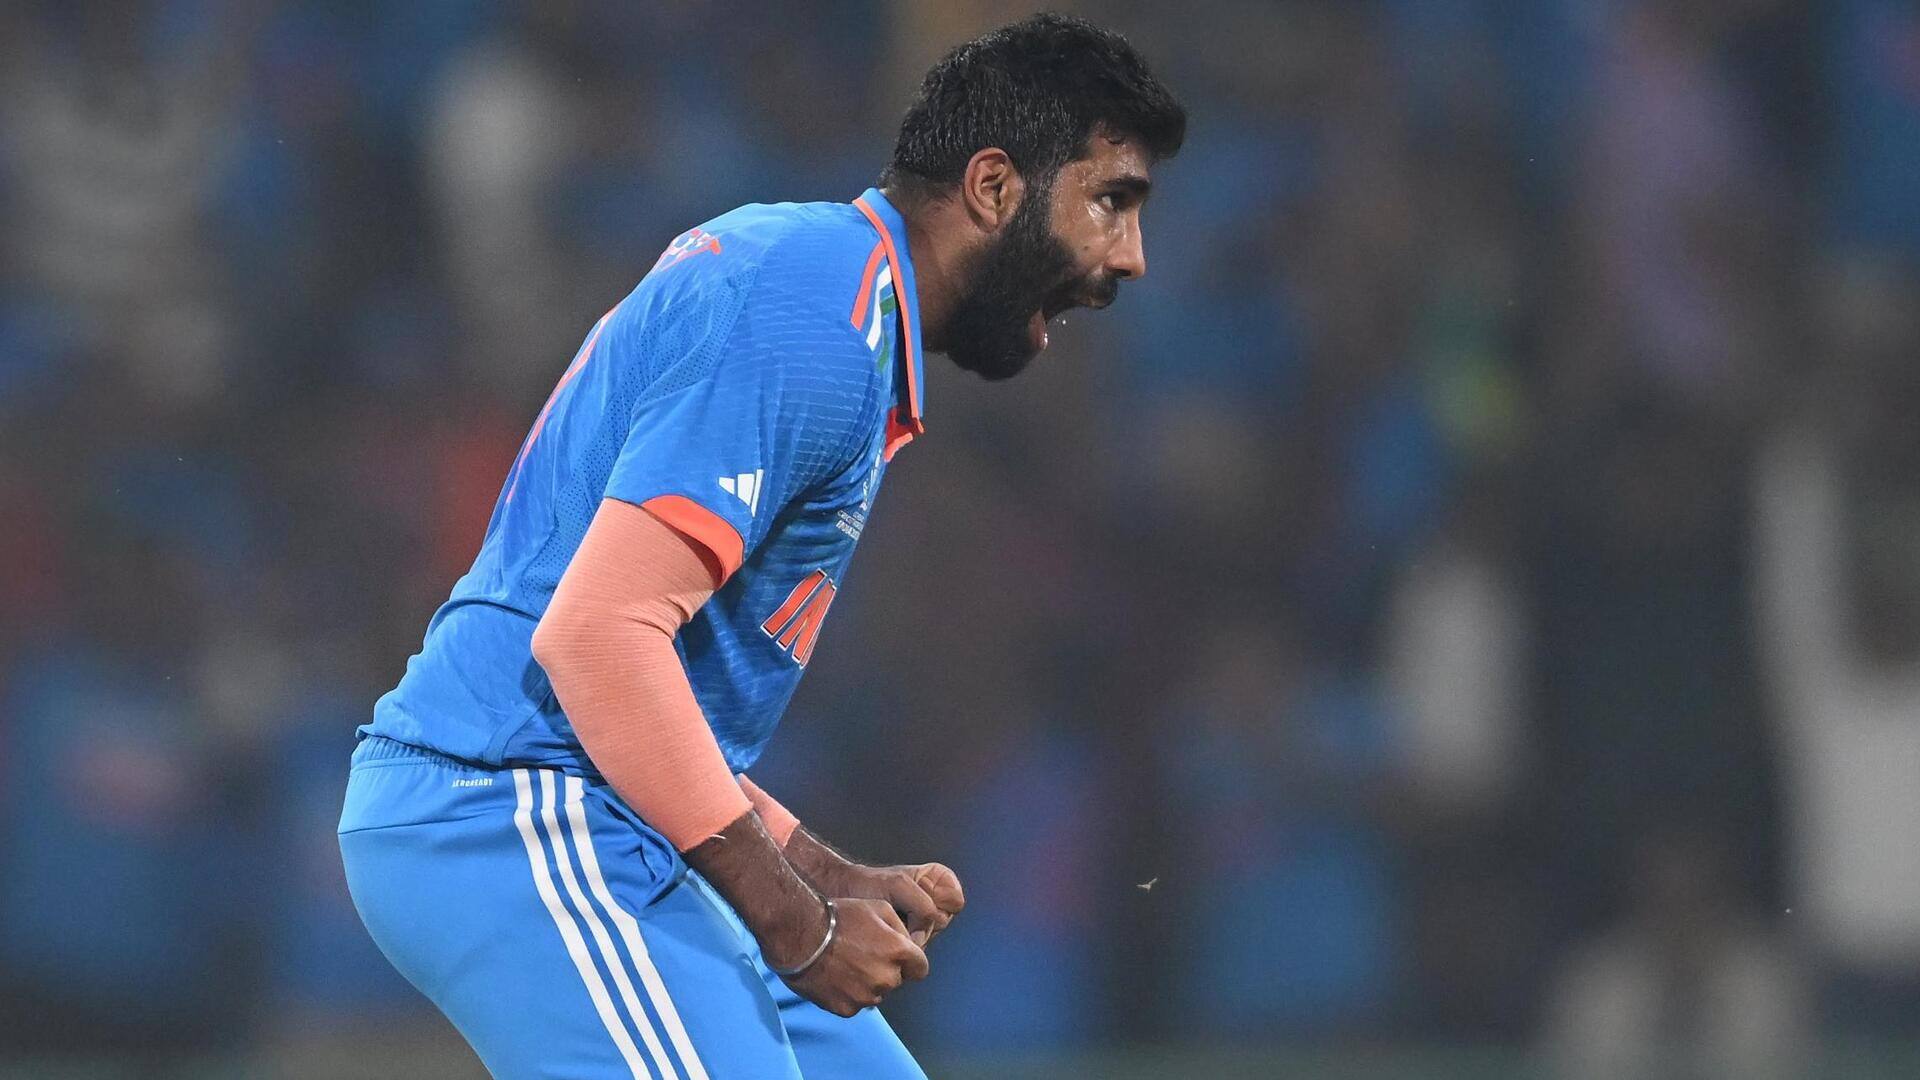 भारत बनाम इंग्लैंड: जसप्रीत बुमराह की शानदार गेंदबाजी, चटकाए 3 विकेट